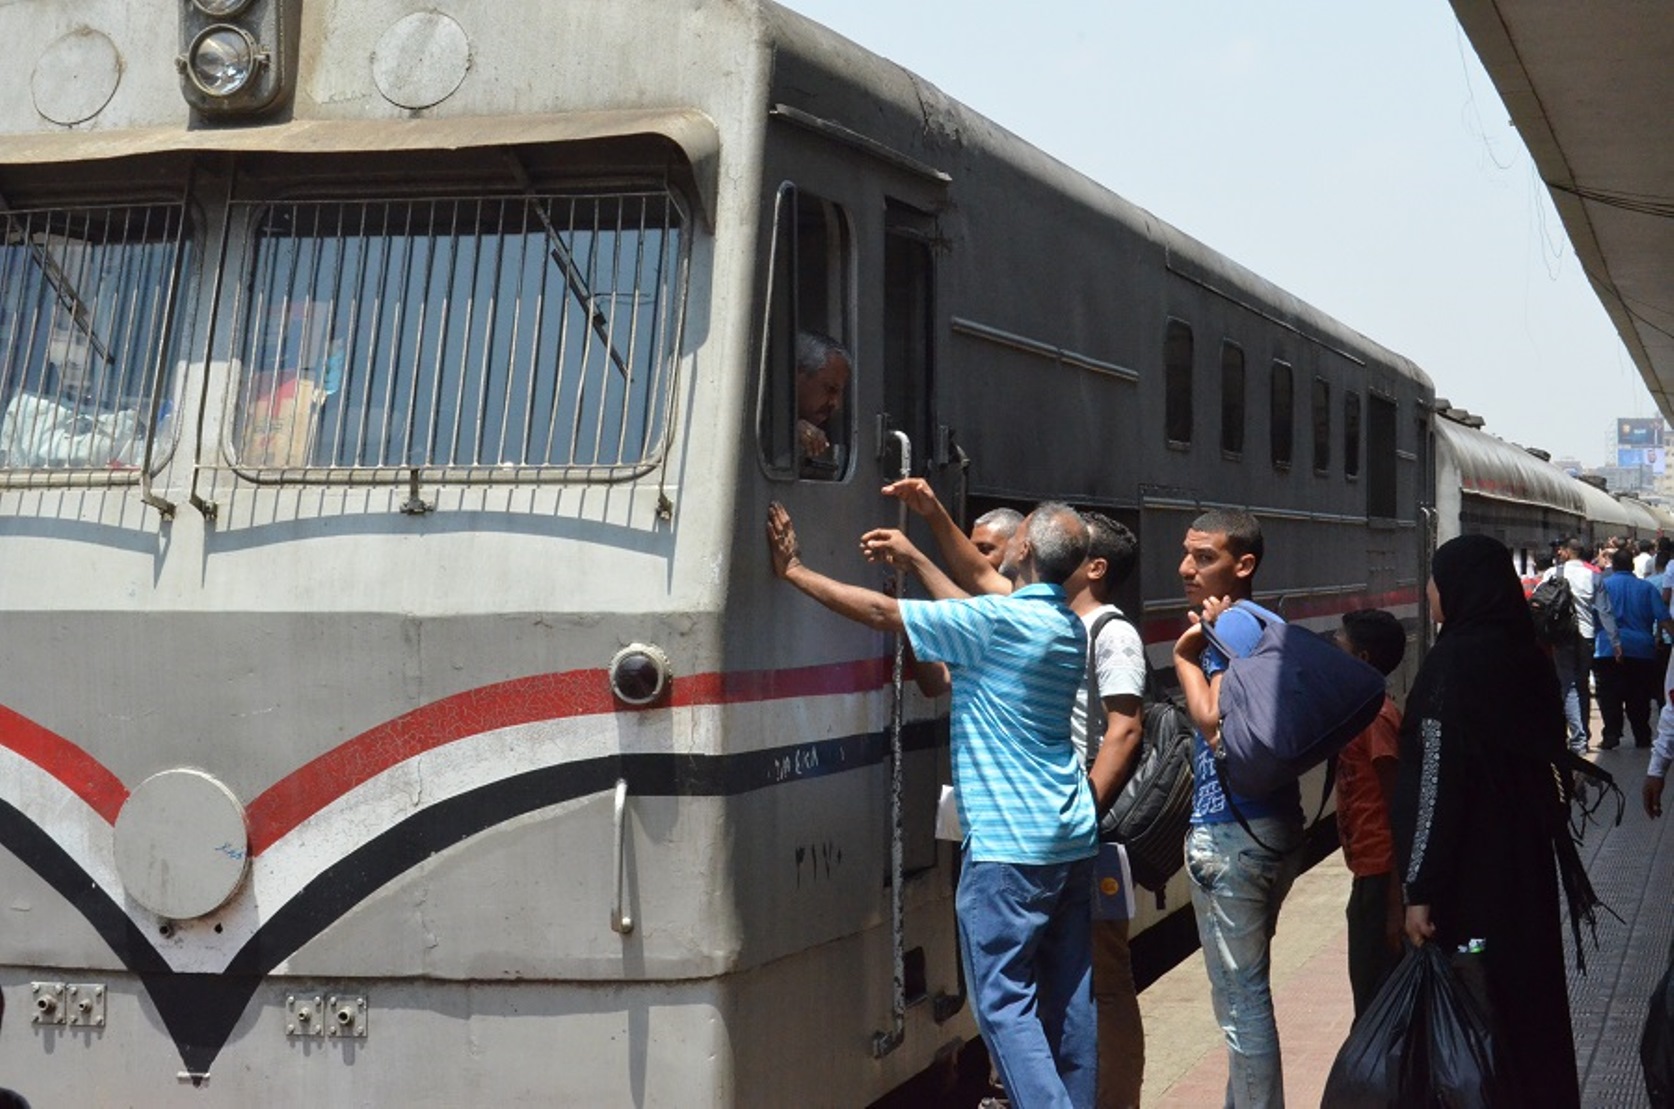 حوادث القطارات في محطة مصر